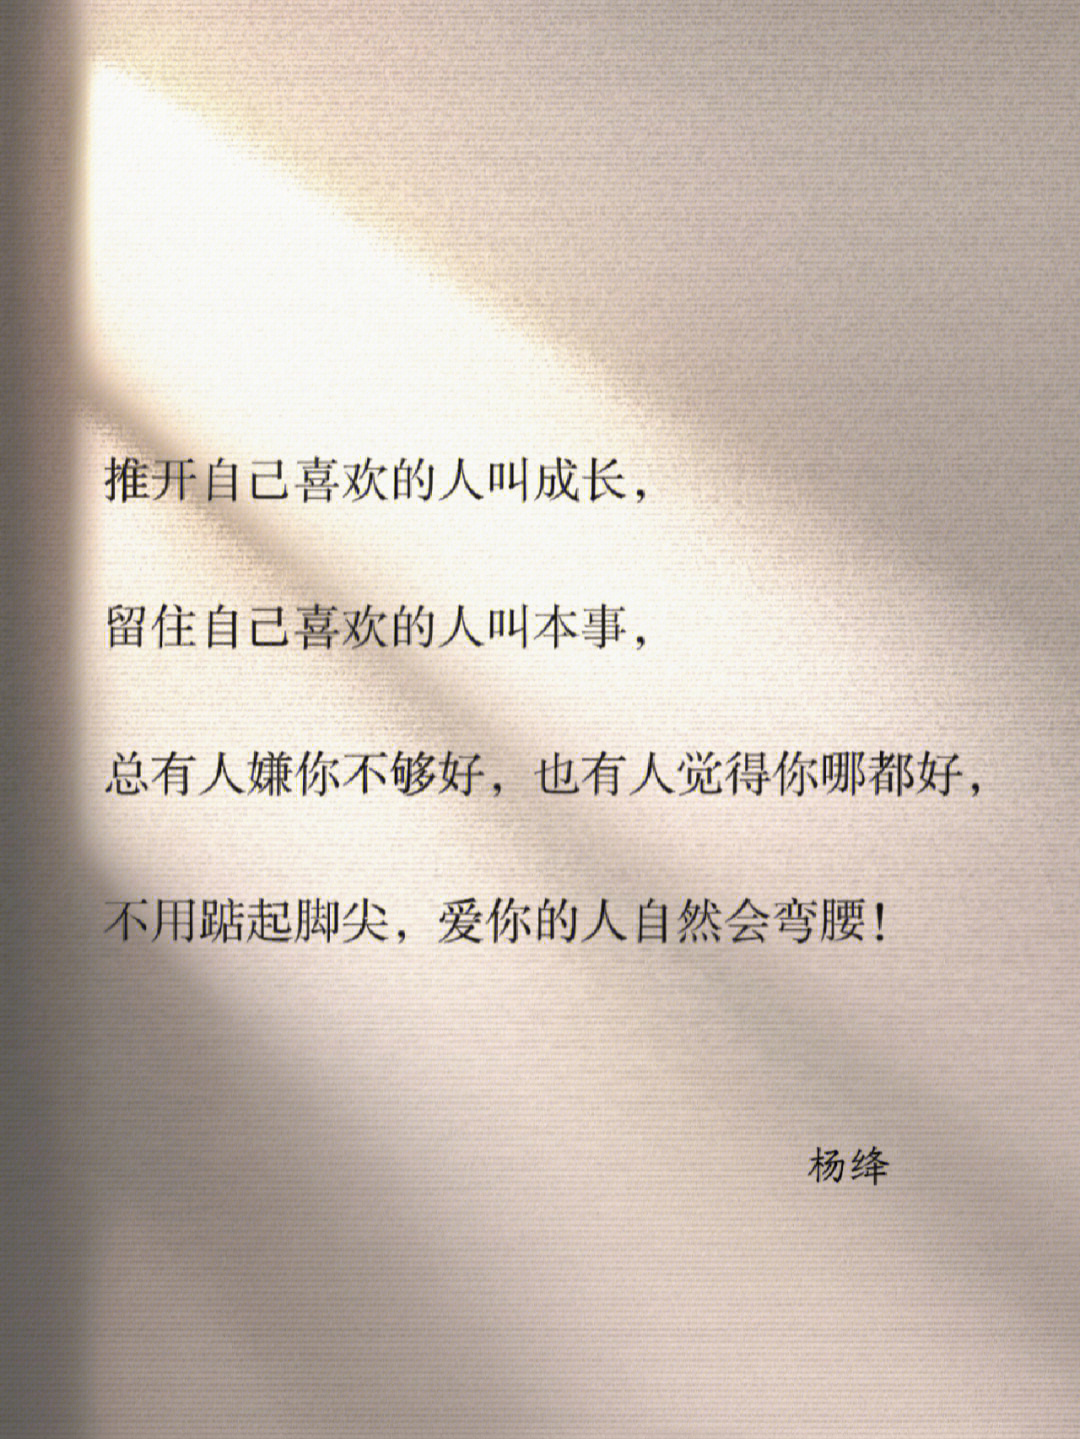 杨绛关于爱情的经典语录第三句写尽了本质